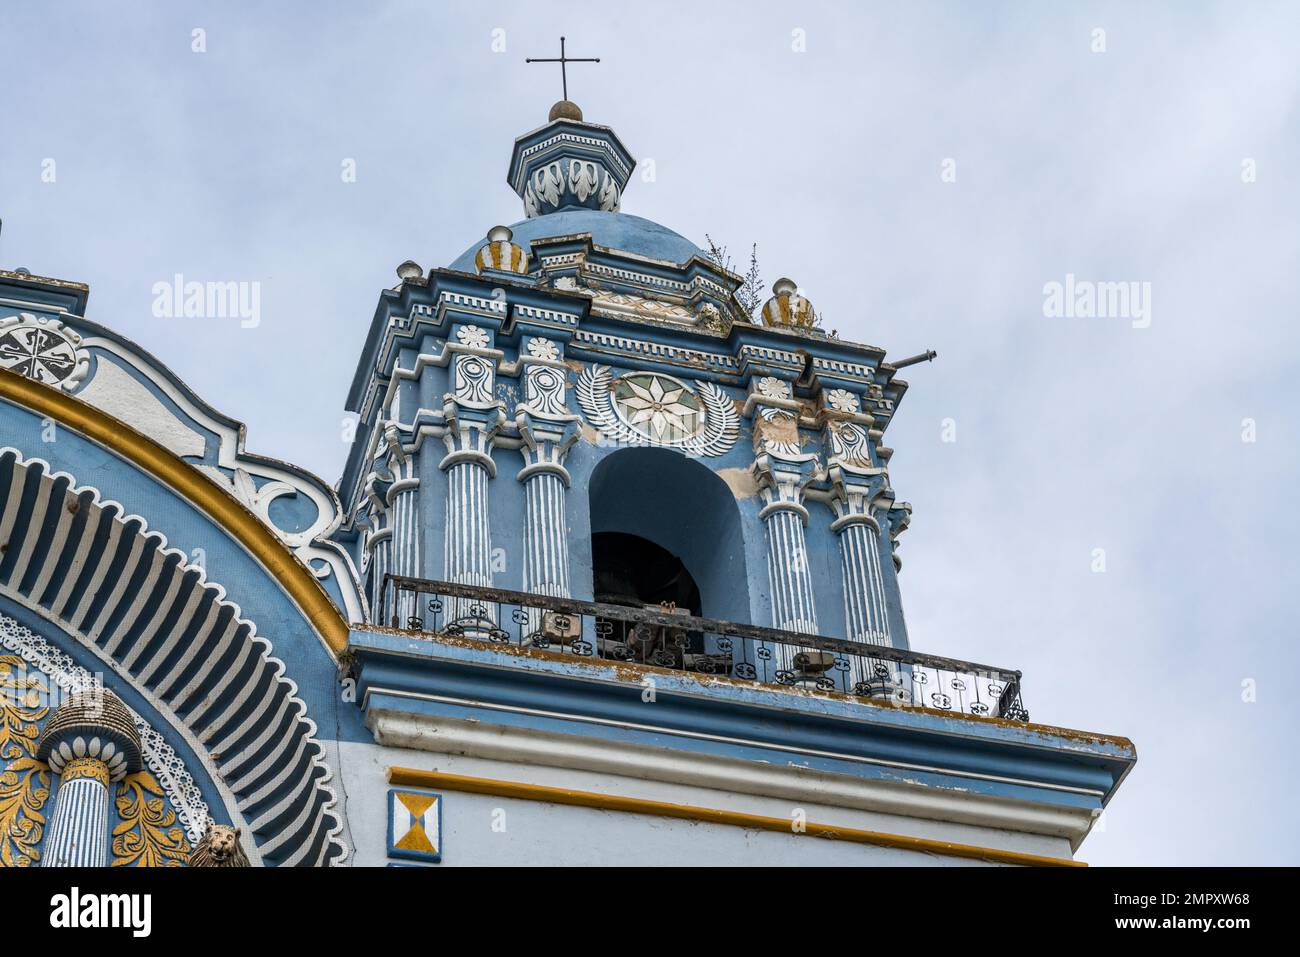 The the colorful painted bell tower of the Church of Santo Domingo de Guzman in Ocotlan de Morelos, Oaxaca, Mexico. Stock Photo